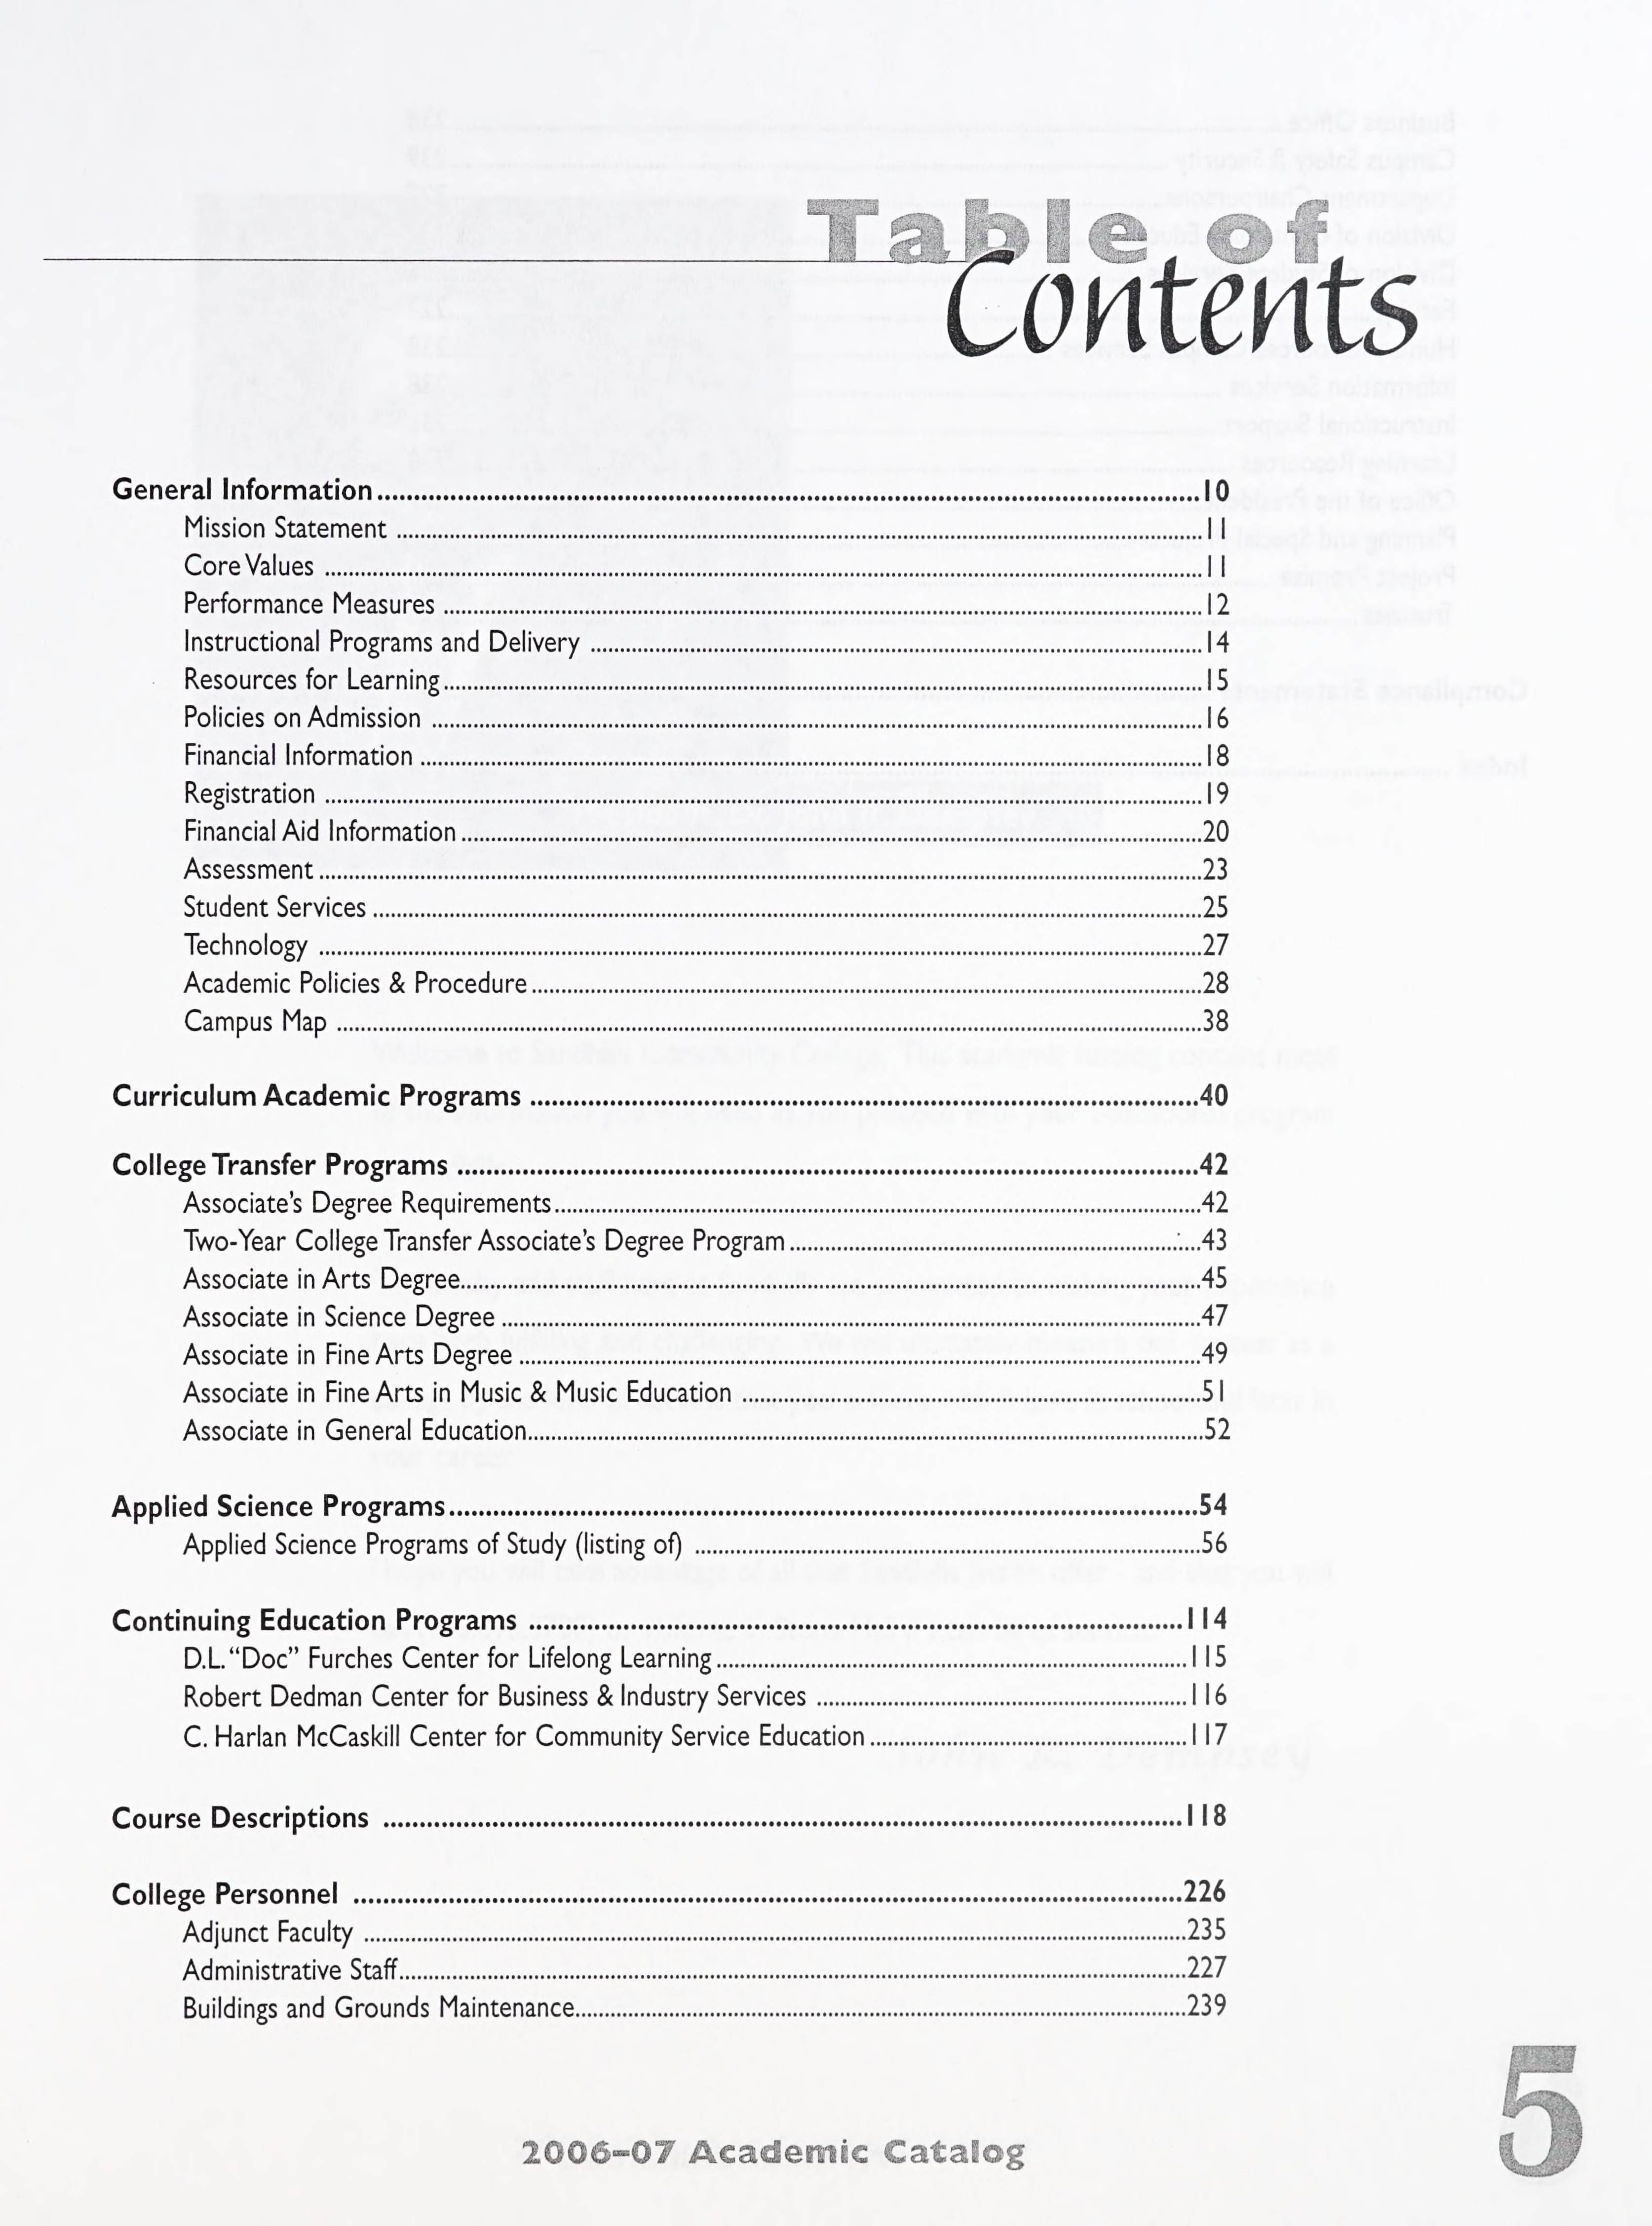 Sandhills Community College Course Catalog [2006-2007]